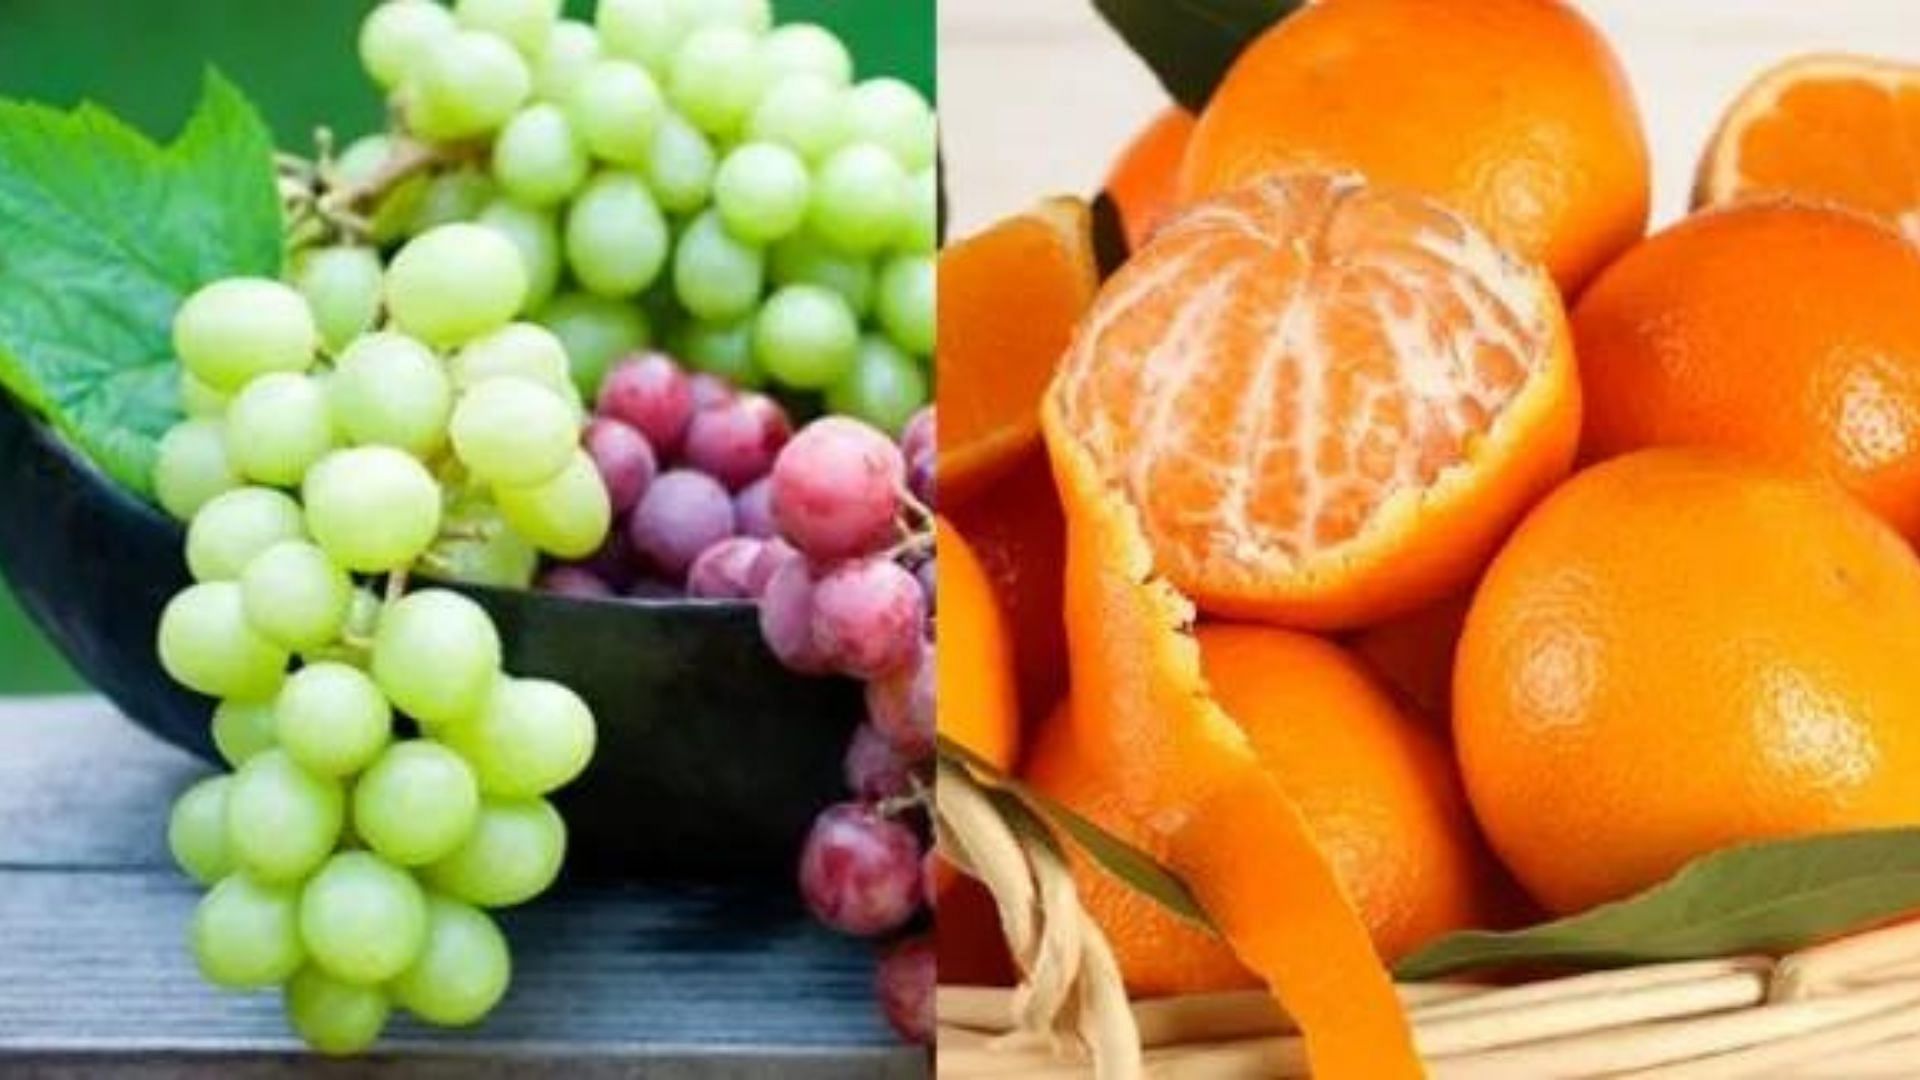 संतरे और अंगूर विटामिन सी के उत्कृष्ट स्रोत हैं!